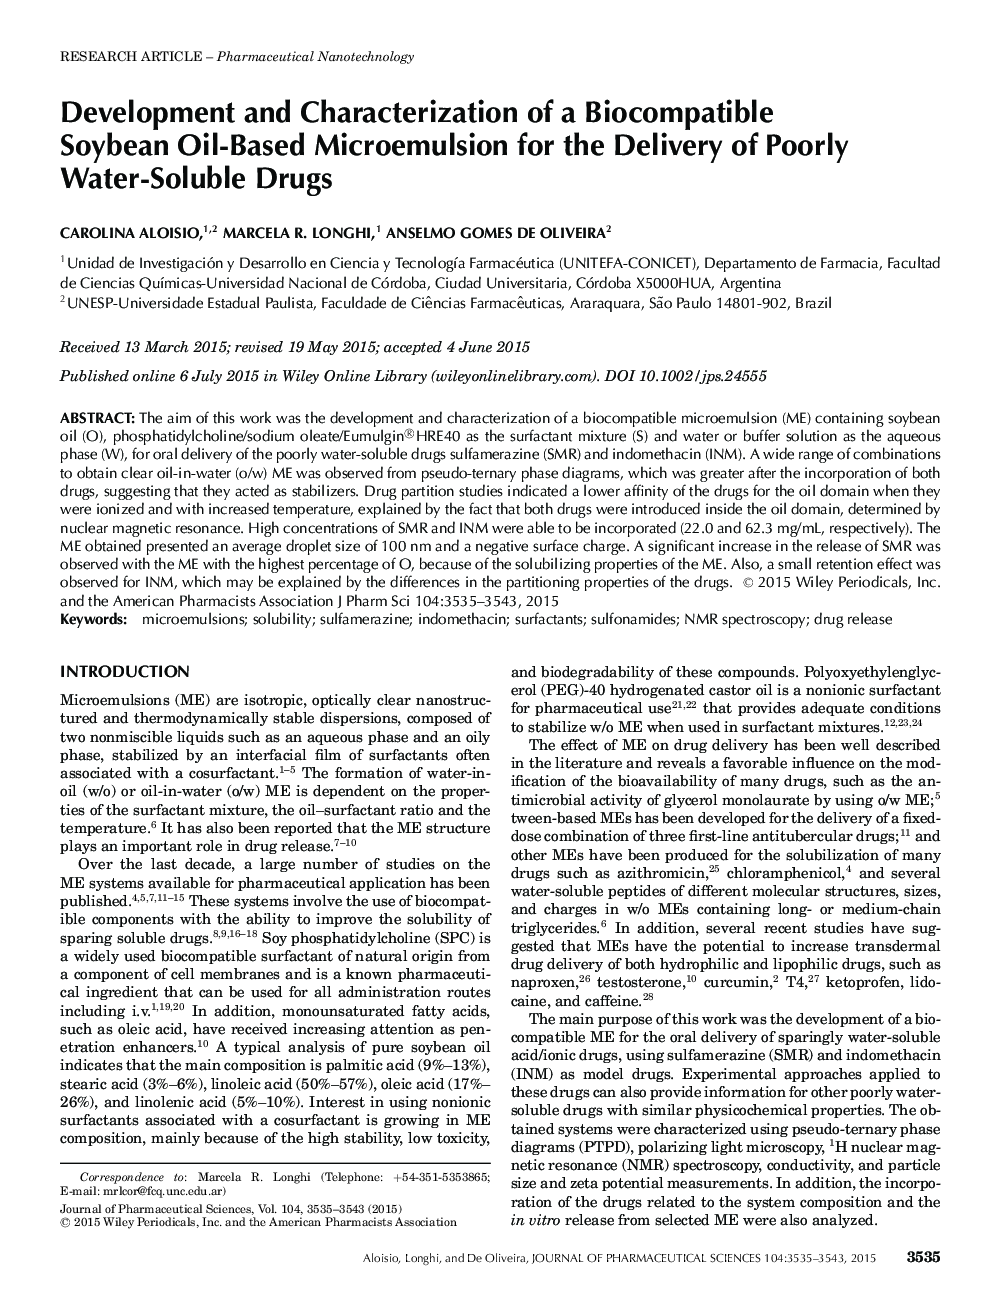 توسعه و تعریف یک میکرومولسیون بر پایه روغن سووی باکتری برای تحویل داروهای حاوی محلول در آب 